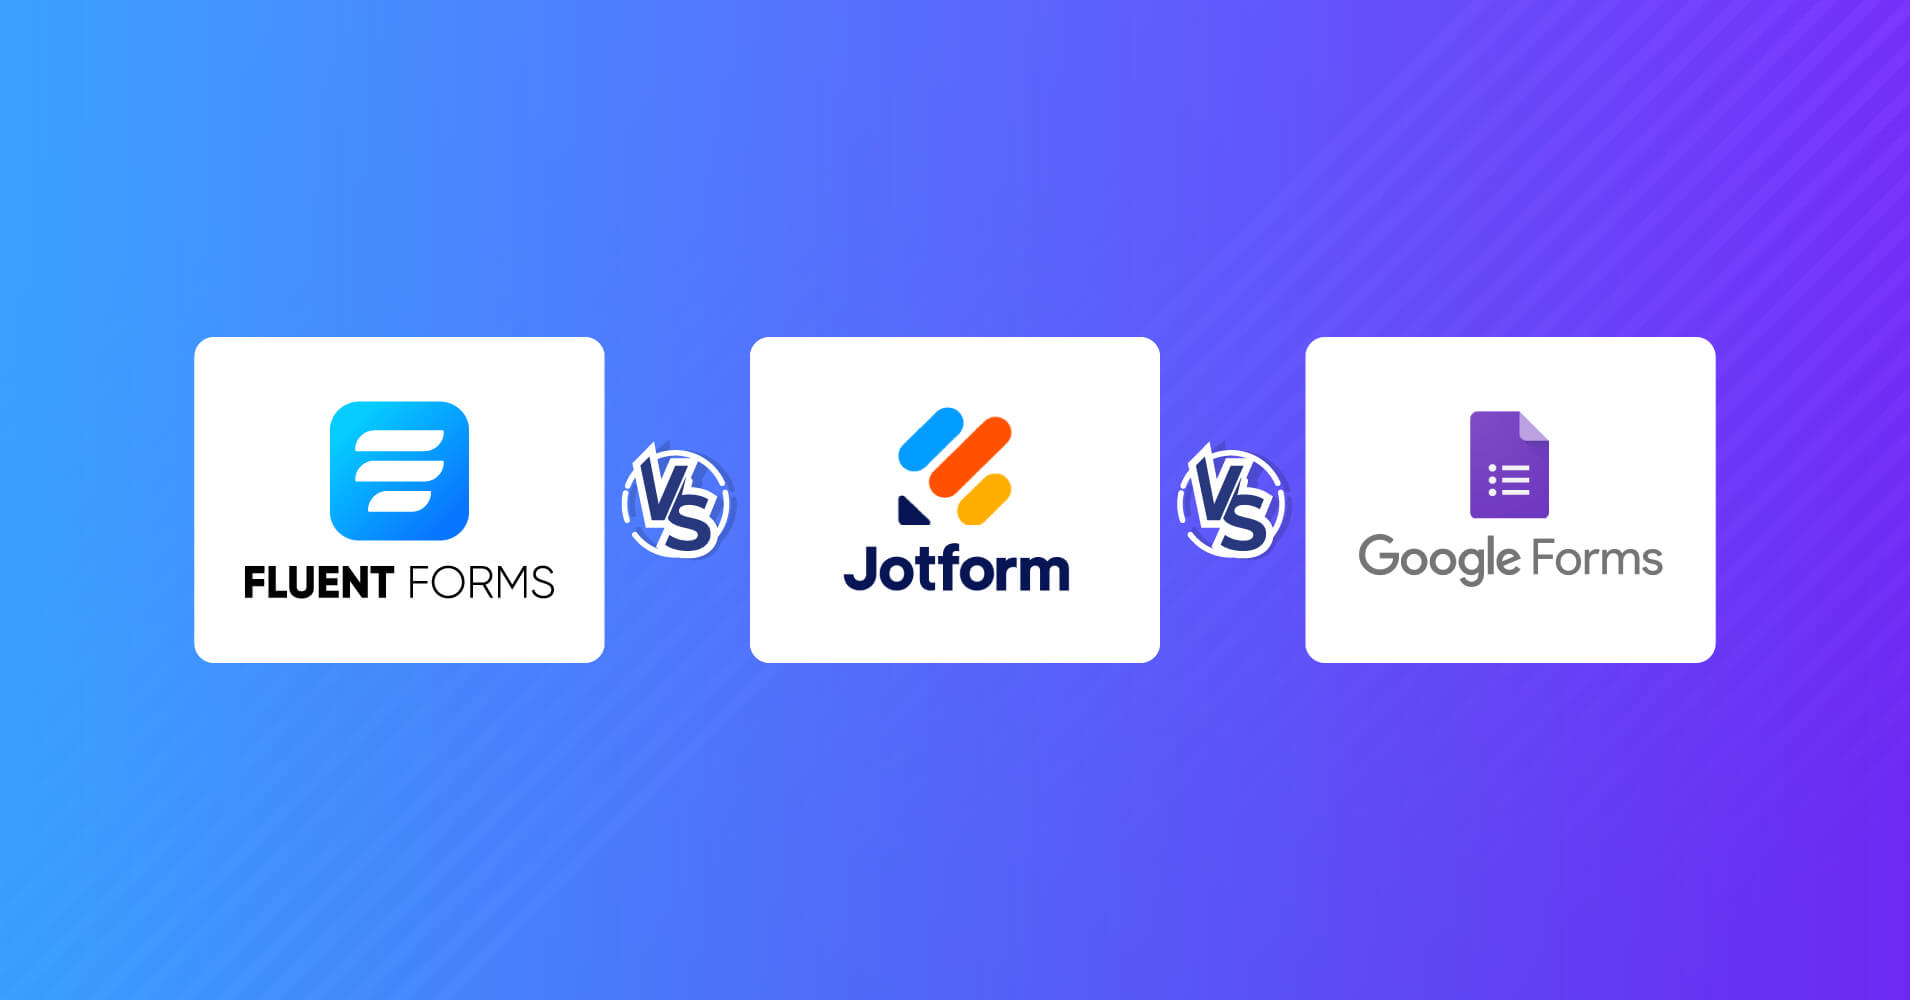 Google Forms vs Jotform vs Fluent Forms